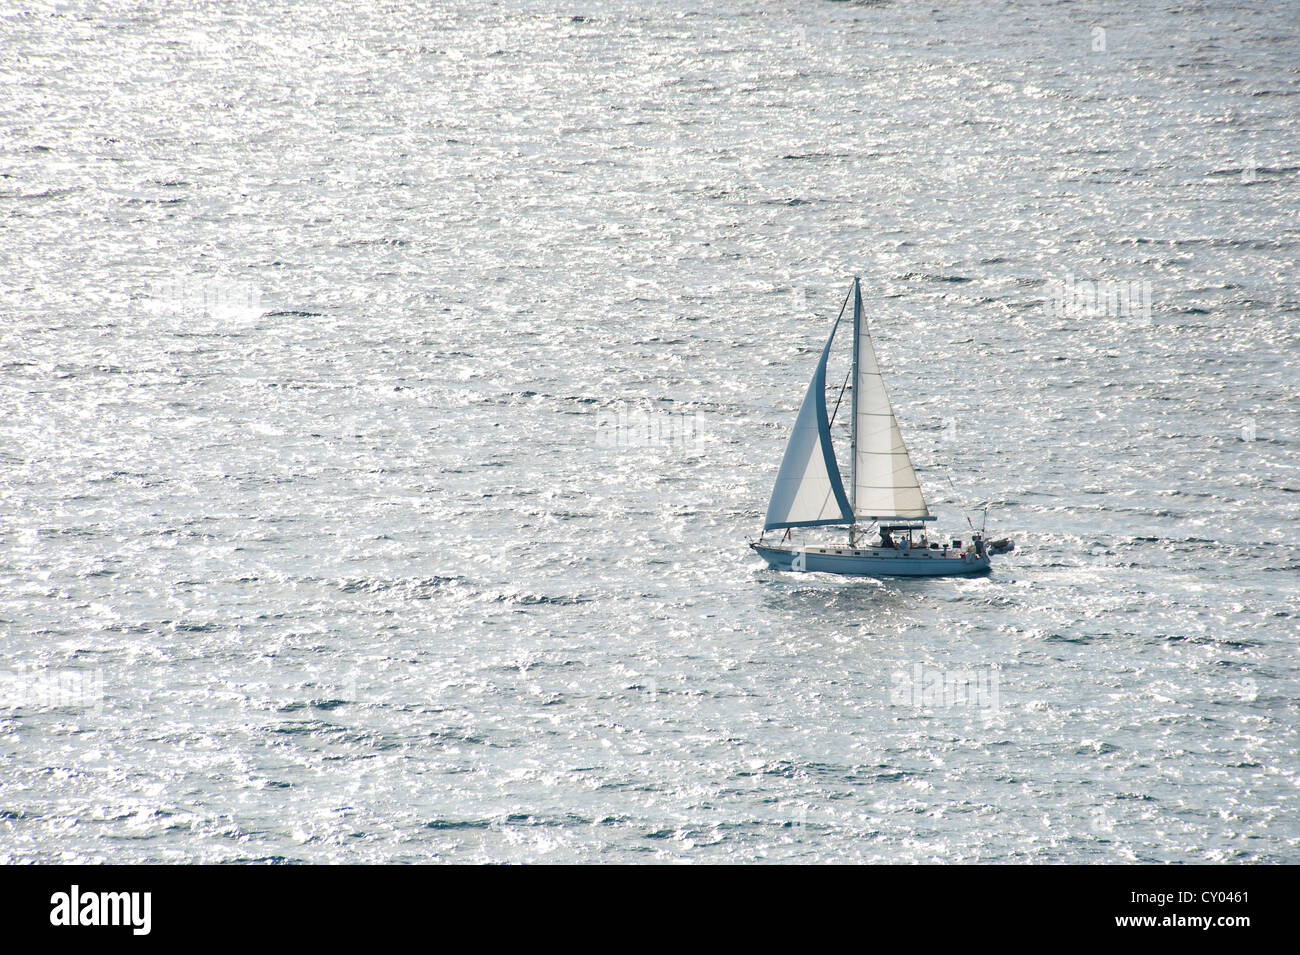 Un bateau à voile sur la mer, West Palm Beach, Floride, USA, Amérique Latine Banque D'Images